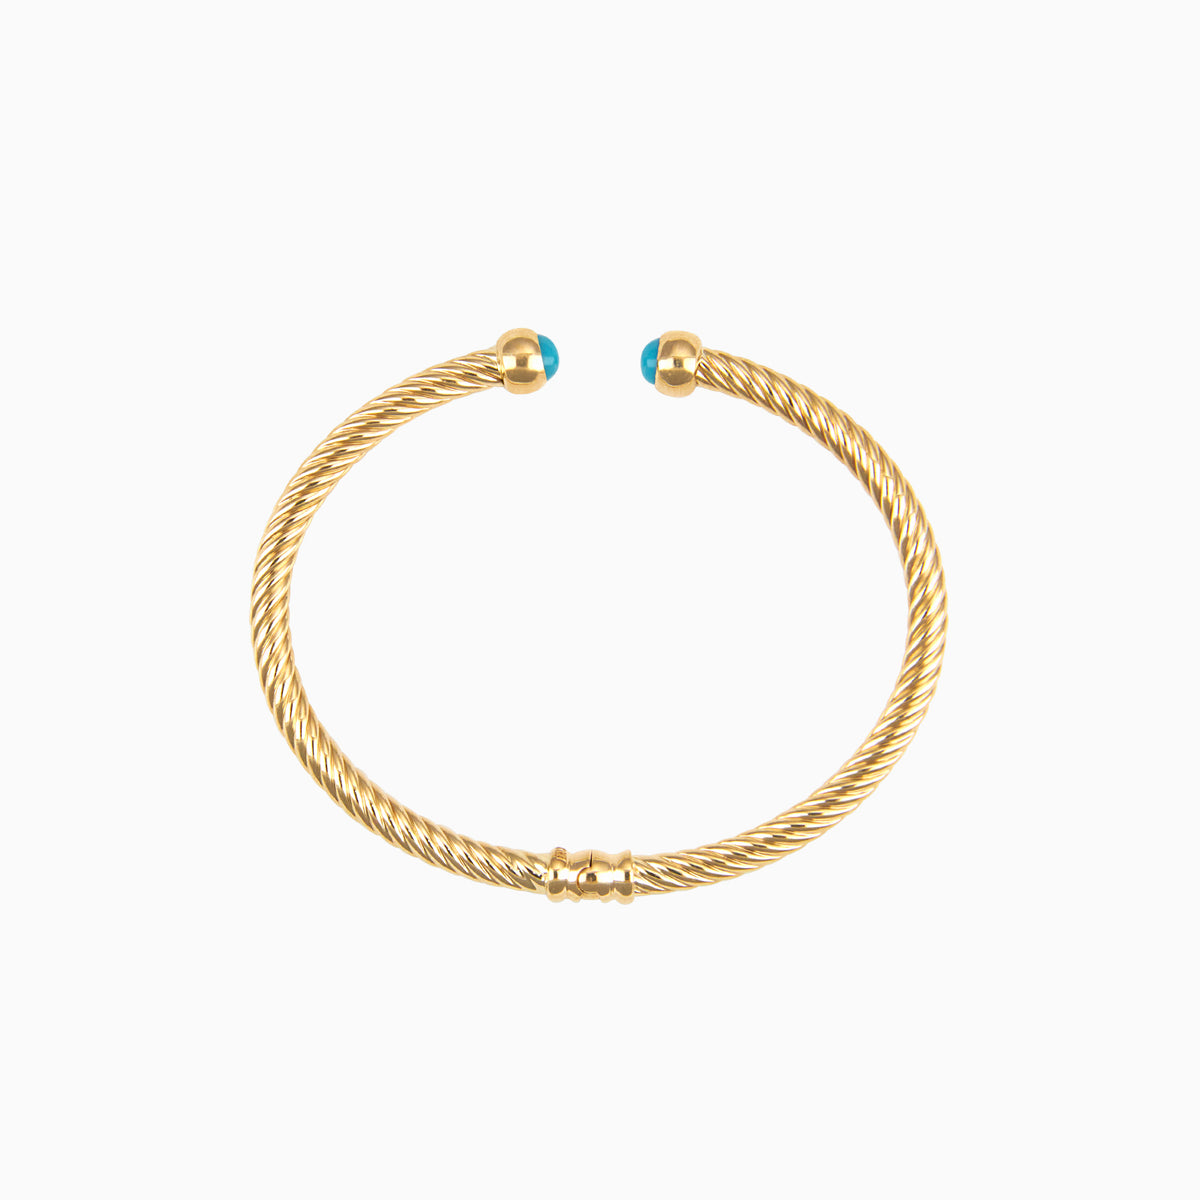 Brazalete 1 Cuerda con Esmalte Color Azul Puntas Chicas Oro Amarillo 14k